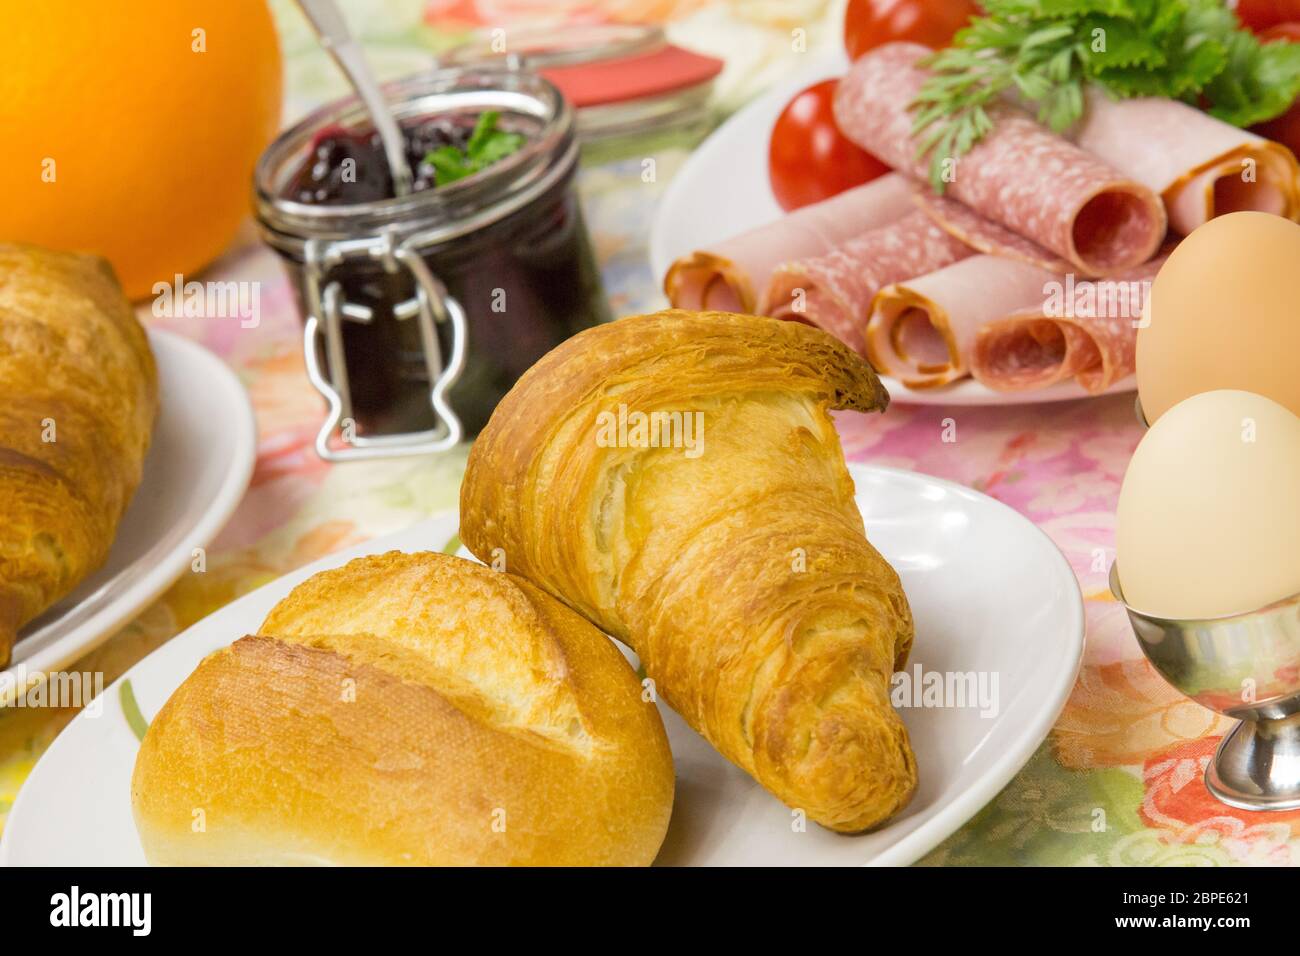 Frühstück mit Brötchen, Croissant, Ei und Aufschnitt Stock Photo